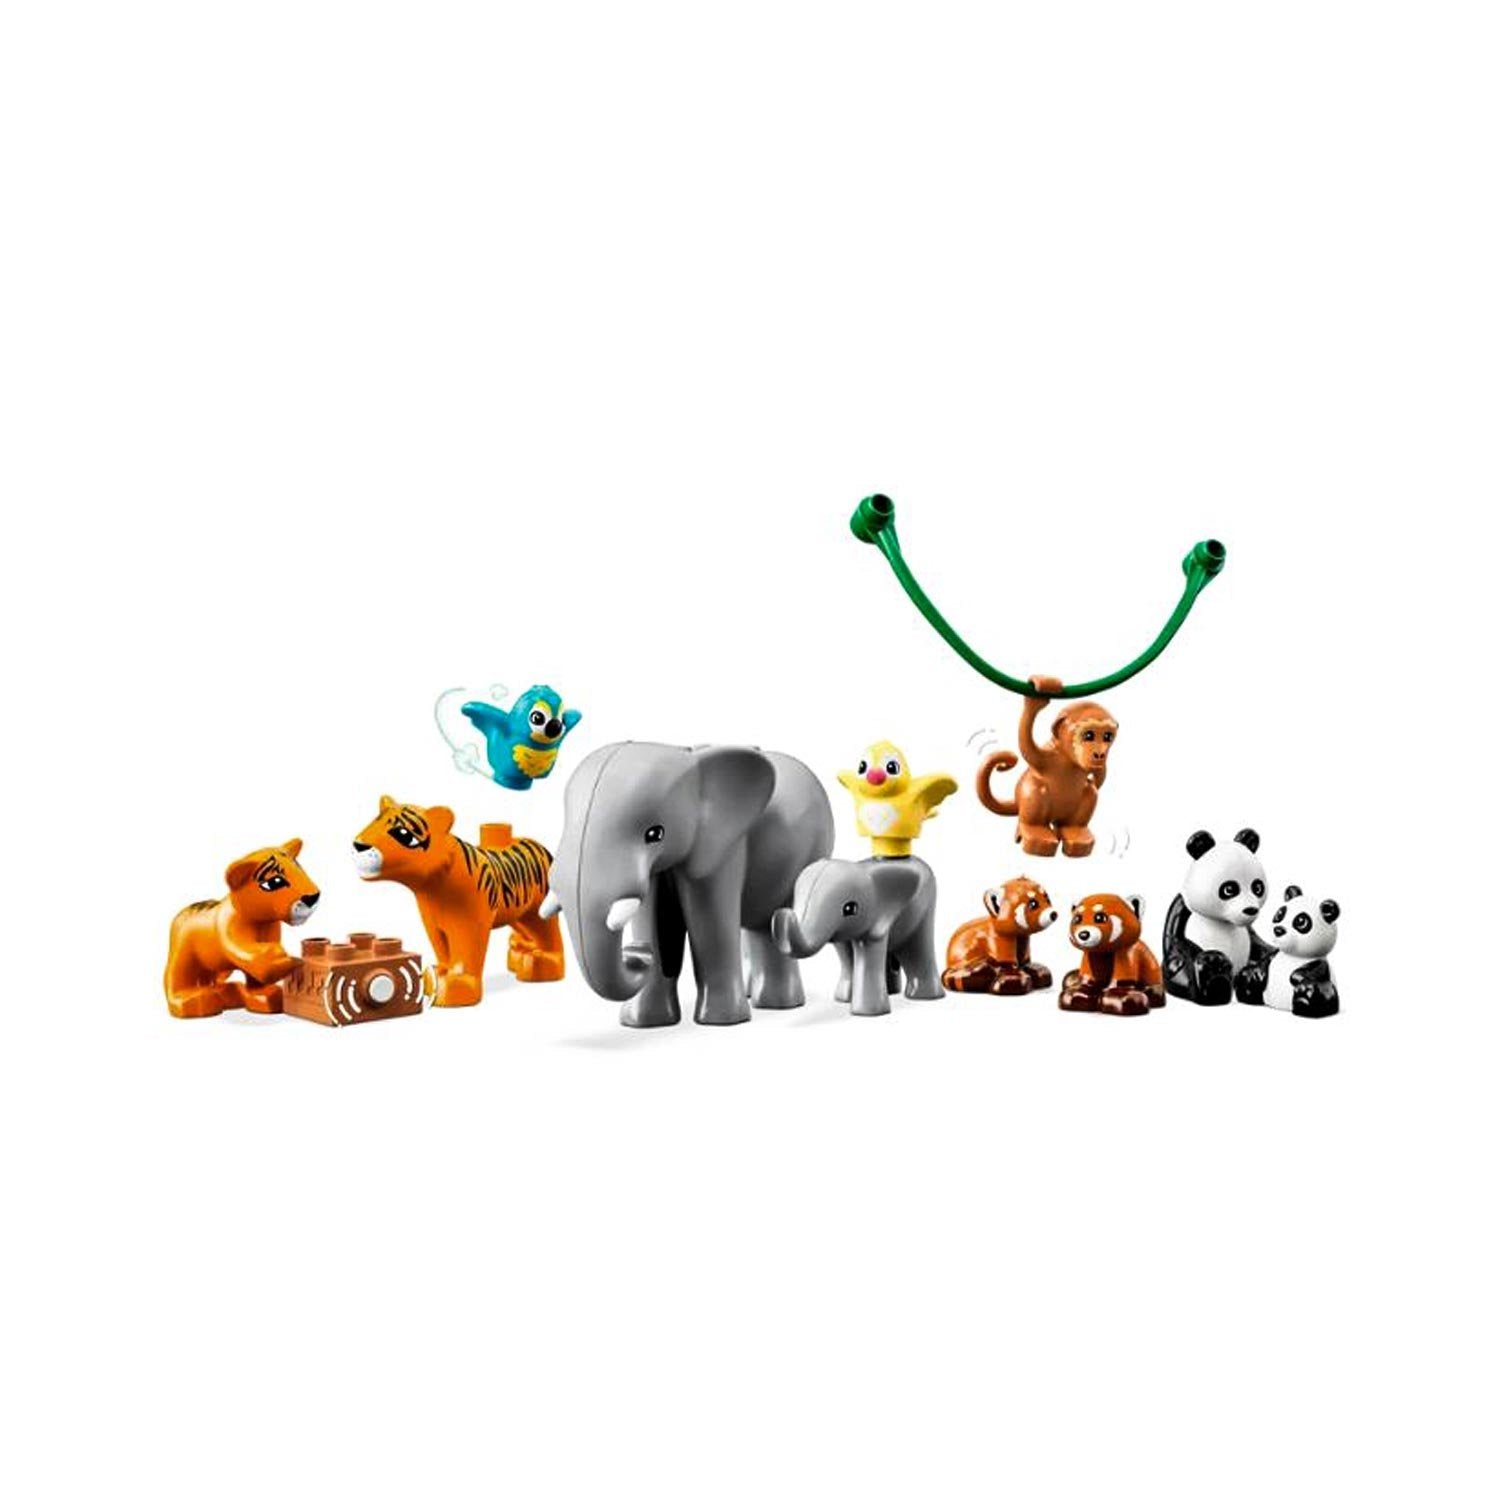 LEGO DUPLO Wild Animals of Asia set 3